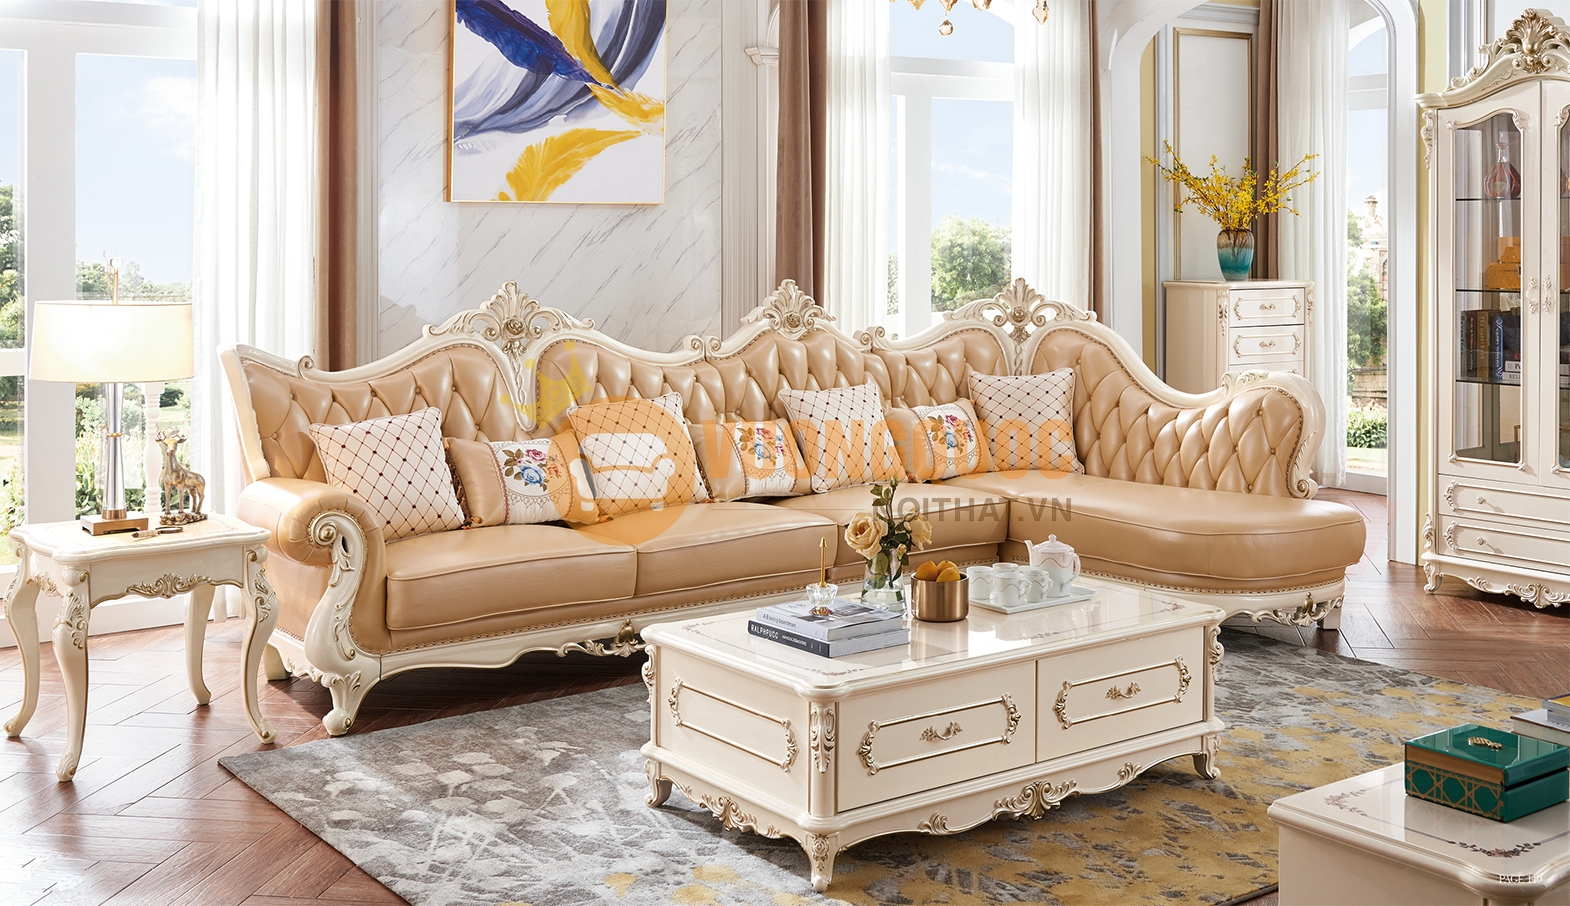 Bộ sofa góc tân cổ điển sang trọng JVN6909S là sự kết hợp giữa phong cách tân cổ điển và sự hiện đại. Với thiết kế góc sang trọng, sản phẩm sẽ khiến cho không gian phòng khách của bạn thêm phần lịch sự và chuyên nghiệp. Bạn sẽ có trải nghiệm sống đẳng cấp và tuyệt vời hơn khi tận hưởng sản phẩm này.